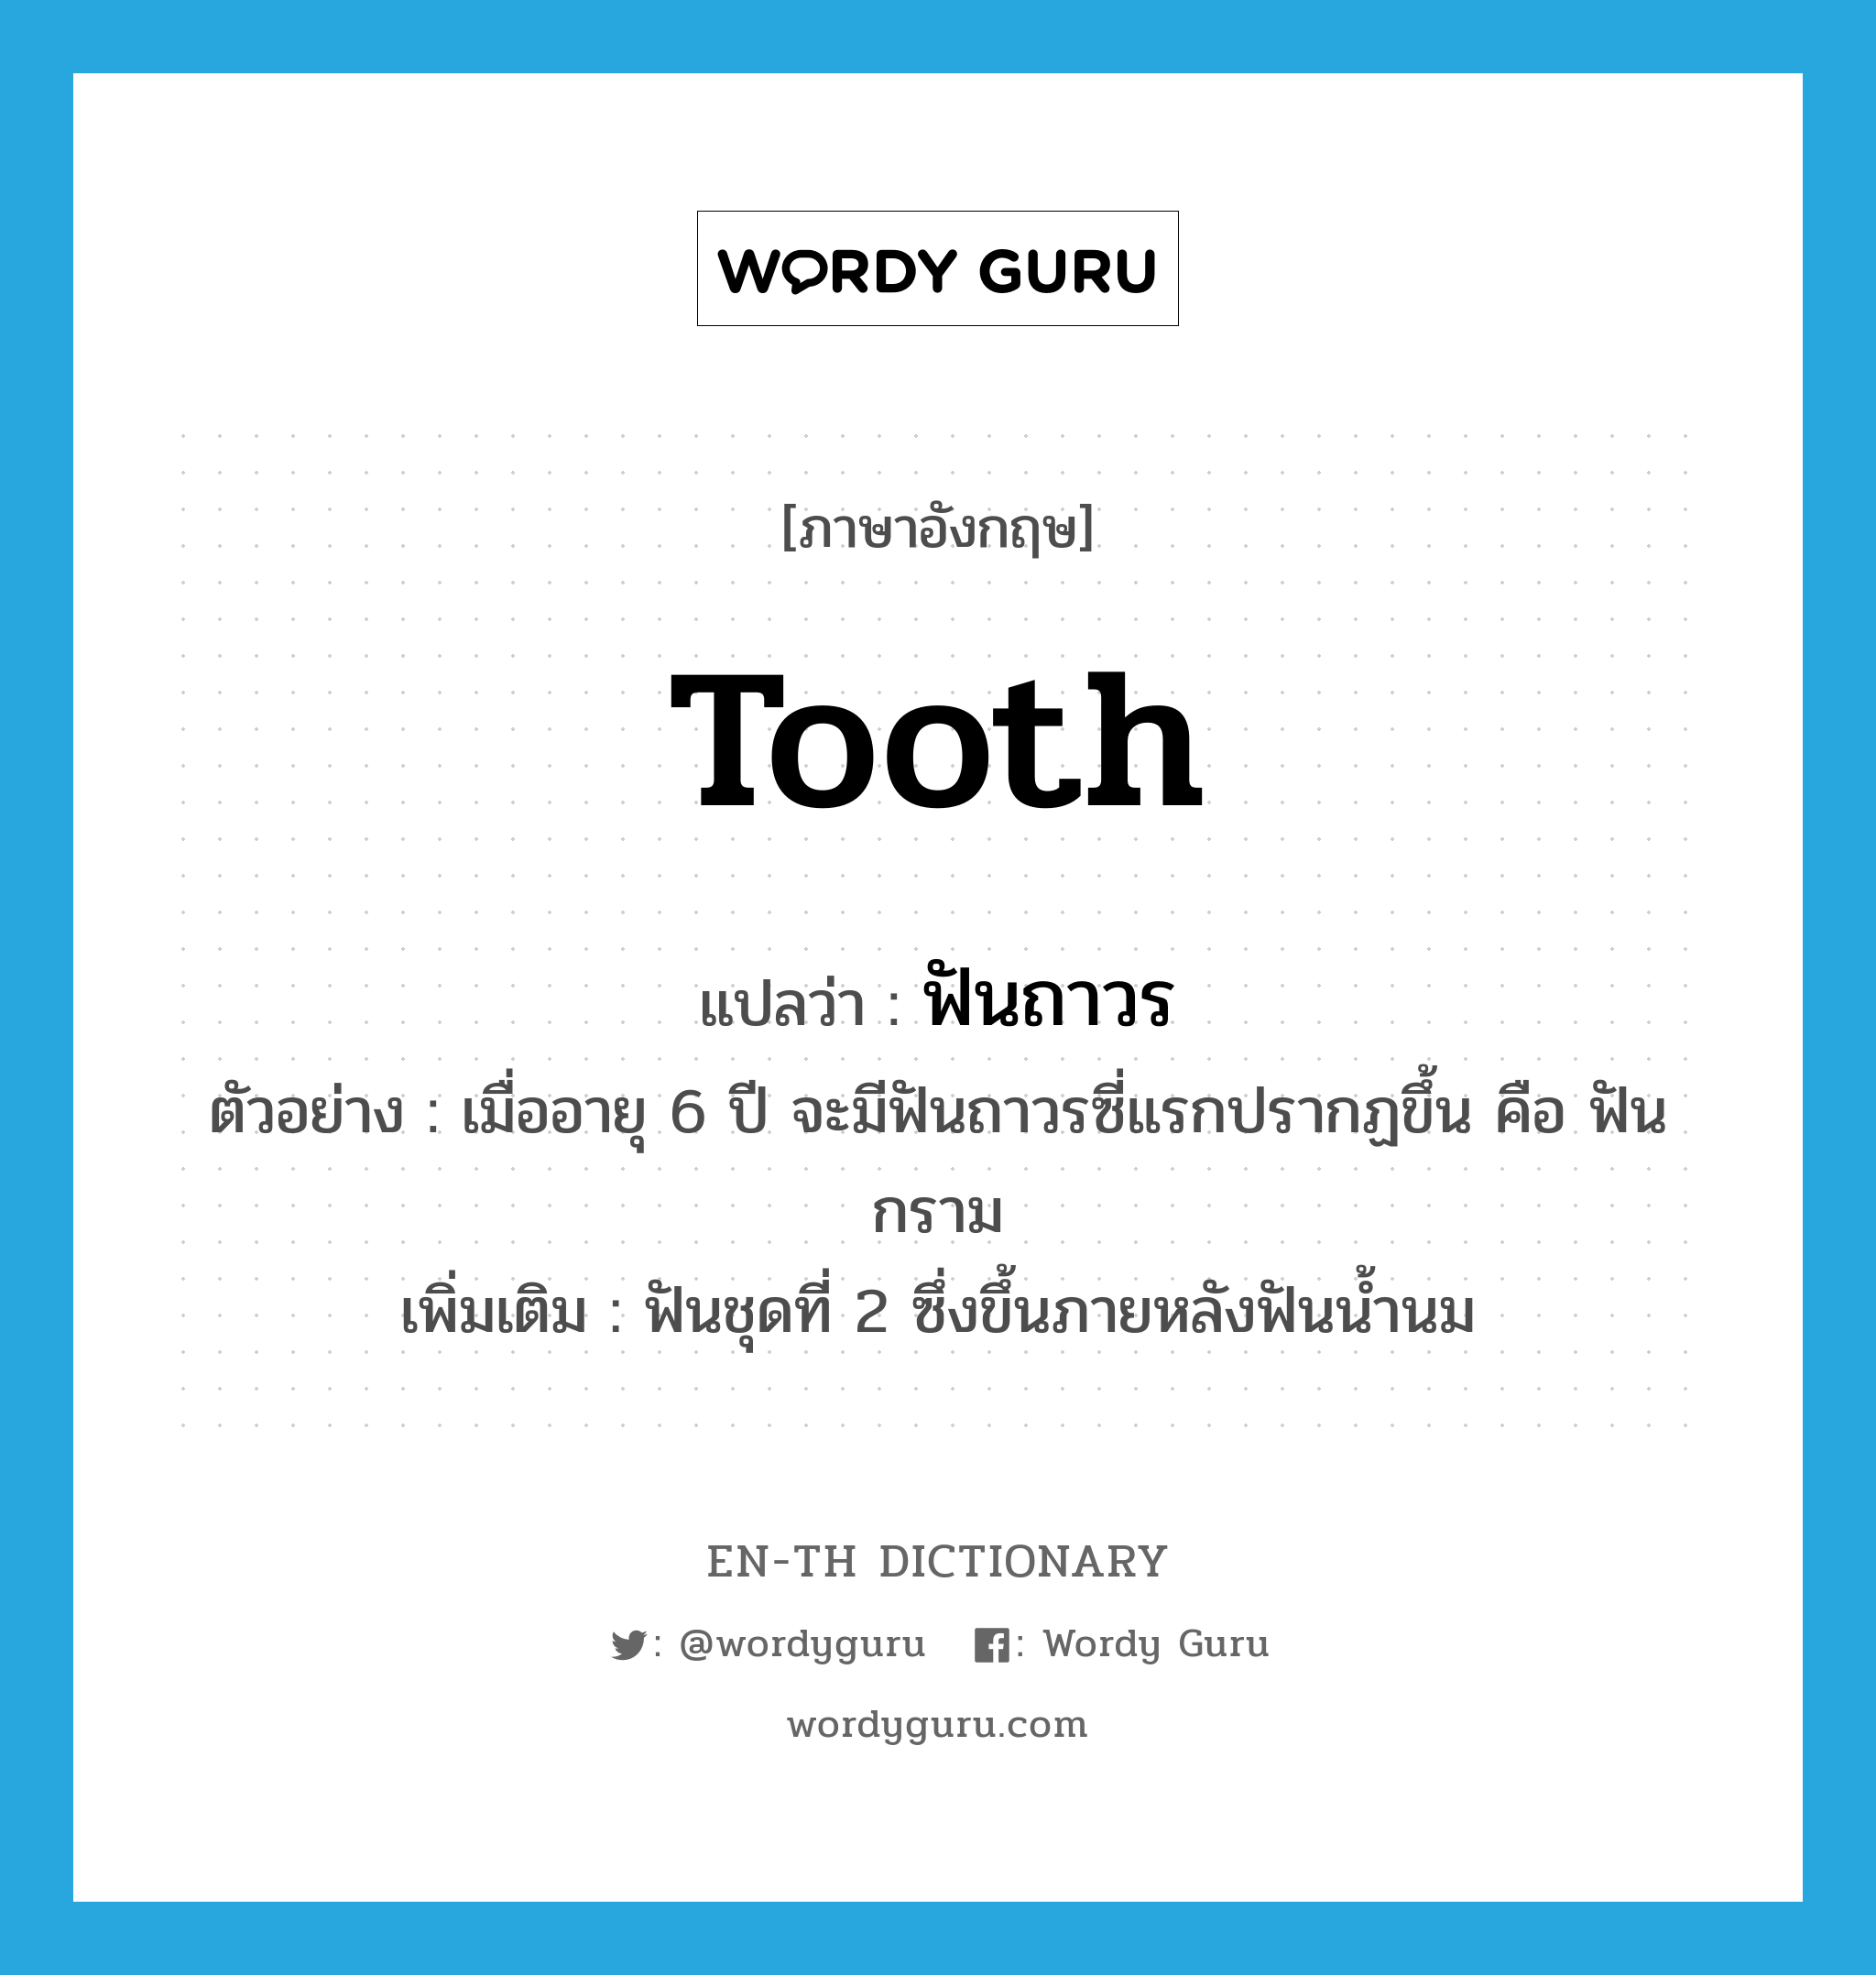 tooth แปลว่า?, คำศัพท์ภาษาอังกฤษ tooth แปลว่า ฟันถาวร ประเภท N ตัวอย่าง เมื่ออายุ 6 ปี จะมีฟันถาวรซี่แรกปรากฏขึ้น คือ ฟันกราม เพิ่มเติม ฟันชุดที่ 2 ซึ่งขึ้นภายหลังฟันน้ำนม หมวด N